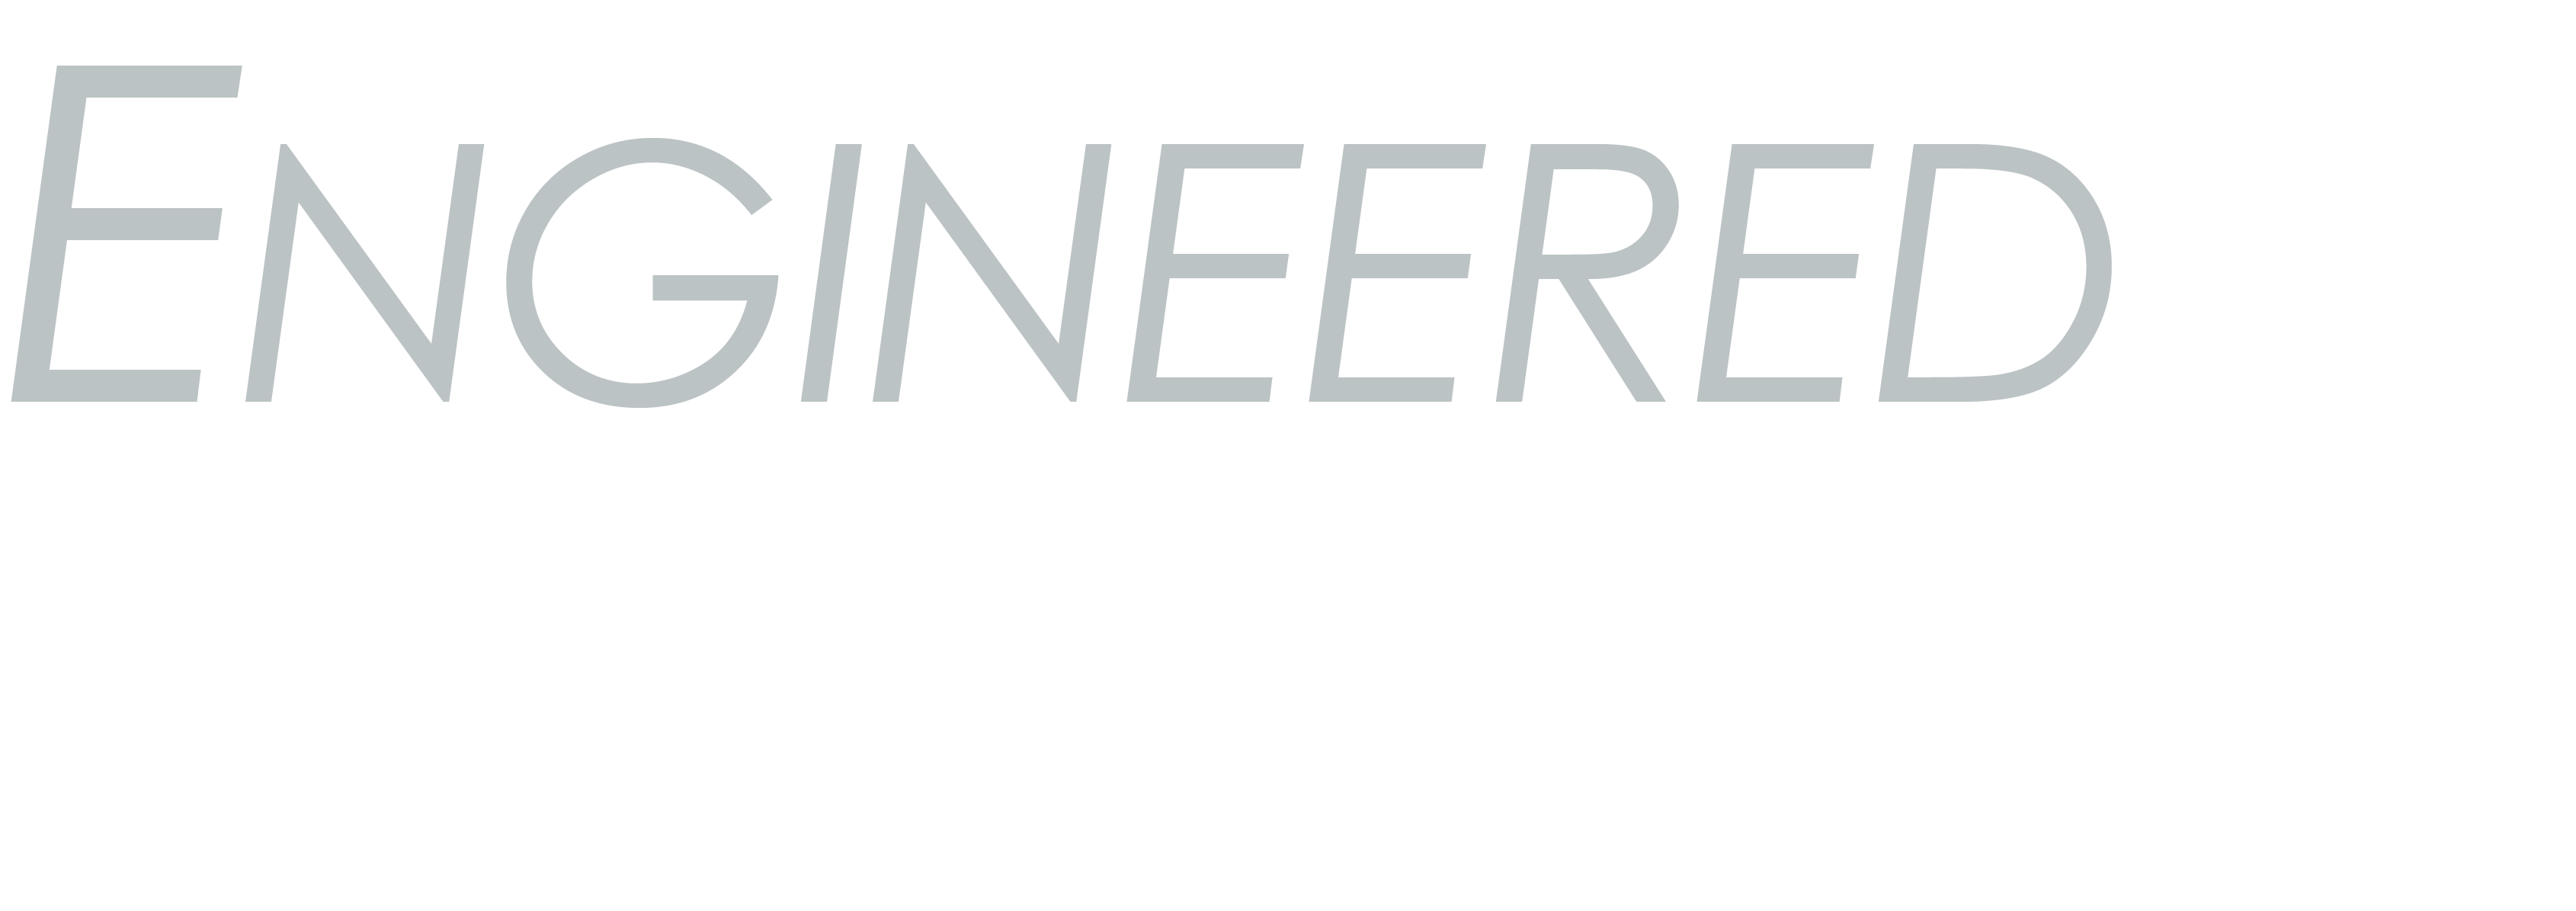 Engineered Solutions Logo Dark Background